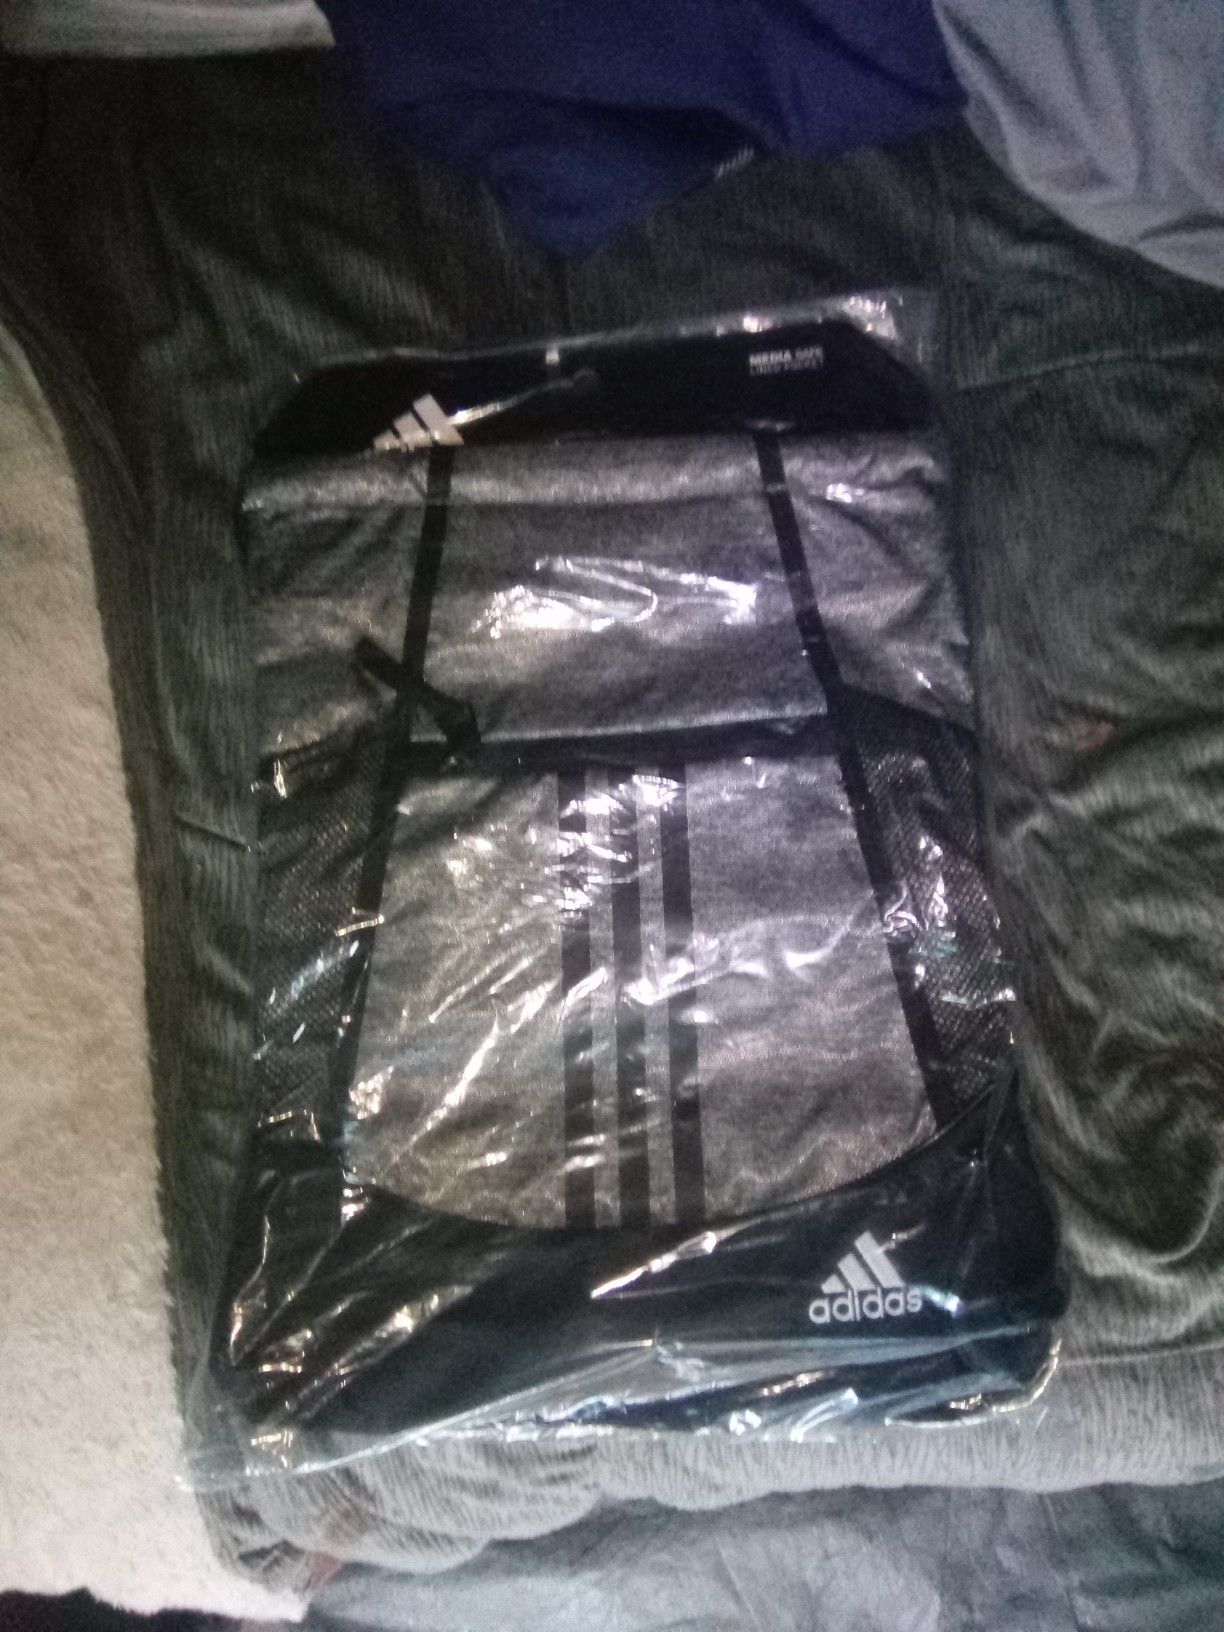 Adidas drawstring backpacks